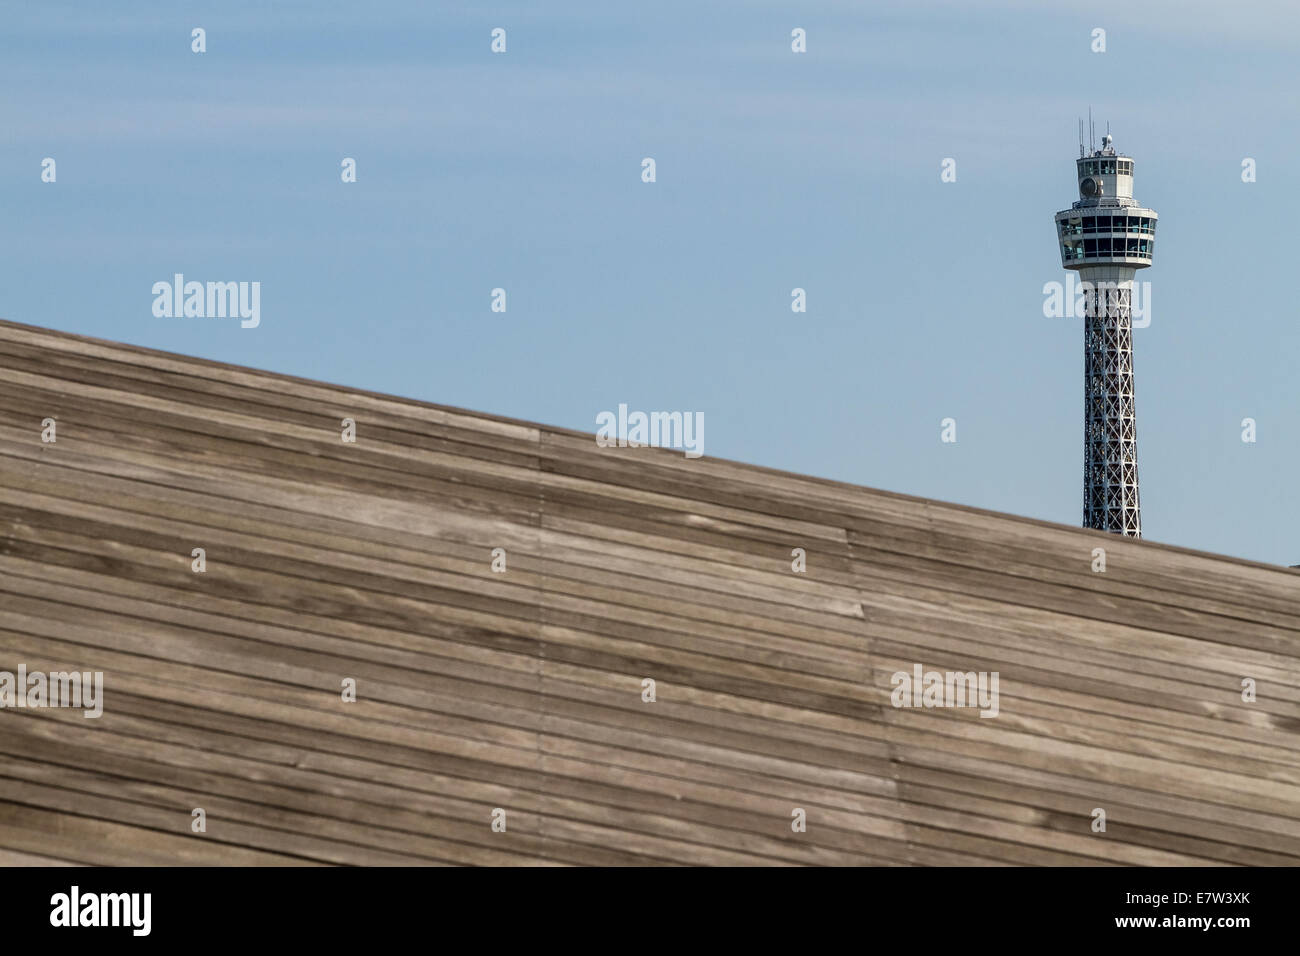 Yokohama Marine tower seen above the wooden decks of Osanbashi Pier in Yokohama, Kanagawa, Japan. Stock Photo